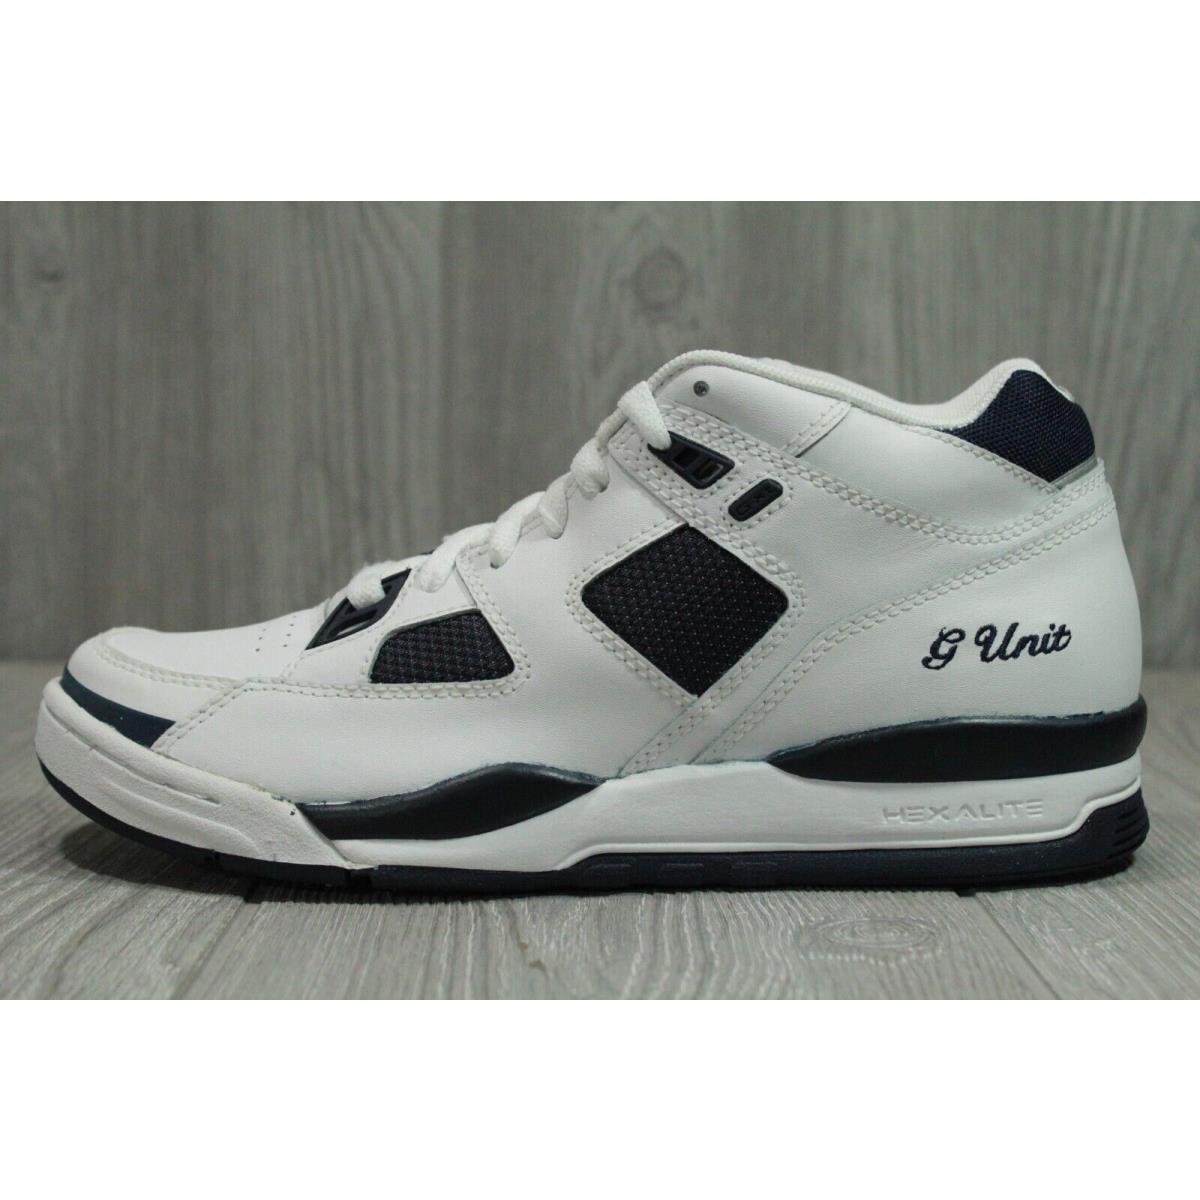 Vintage Reebok G Unit G XT White Navy Shoes 2004 Men Wmns 7 Oss | 076554262188 - Reebok shoes - White SporTipTop